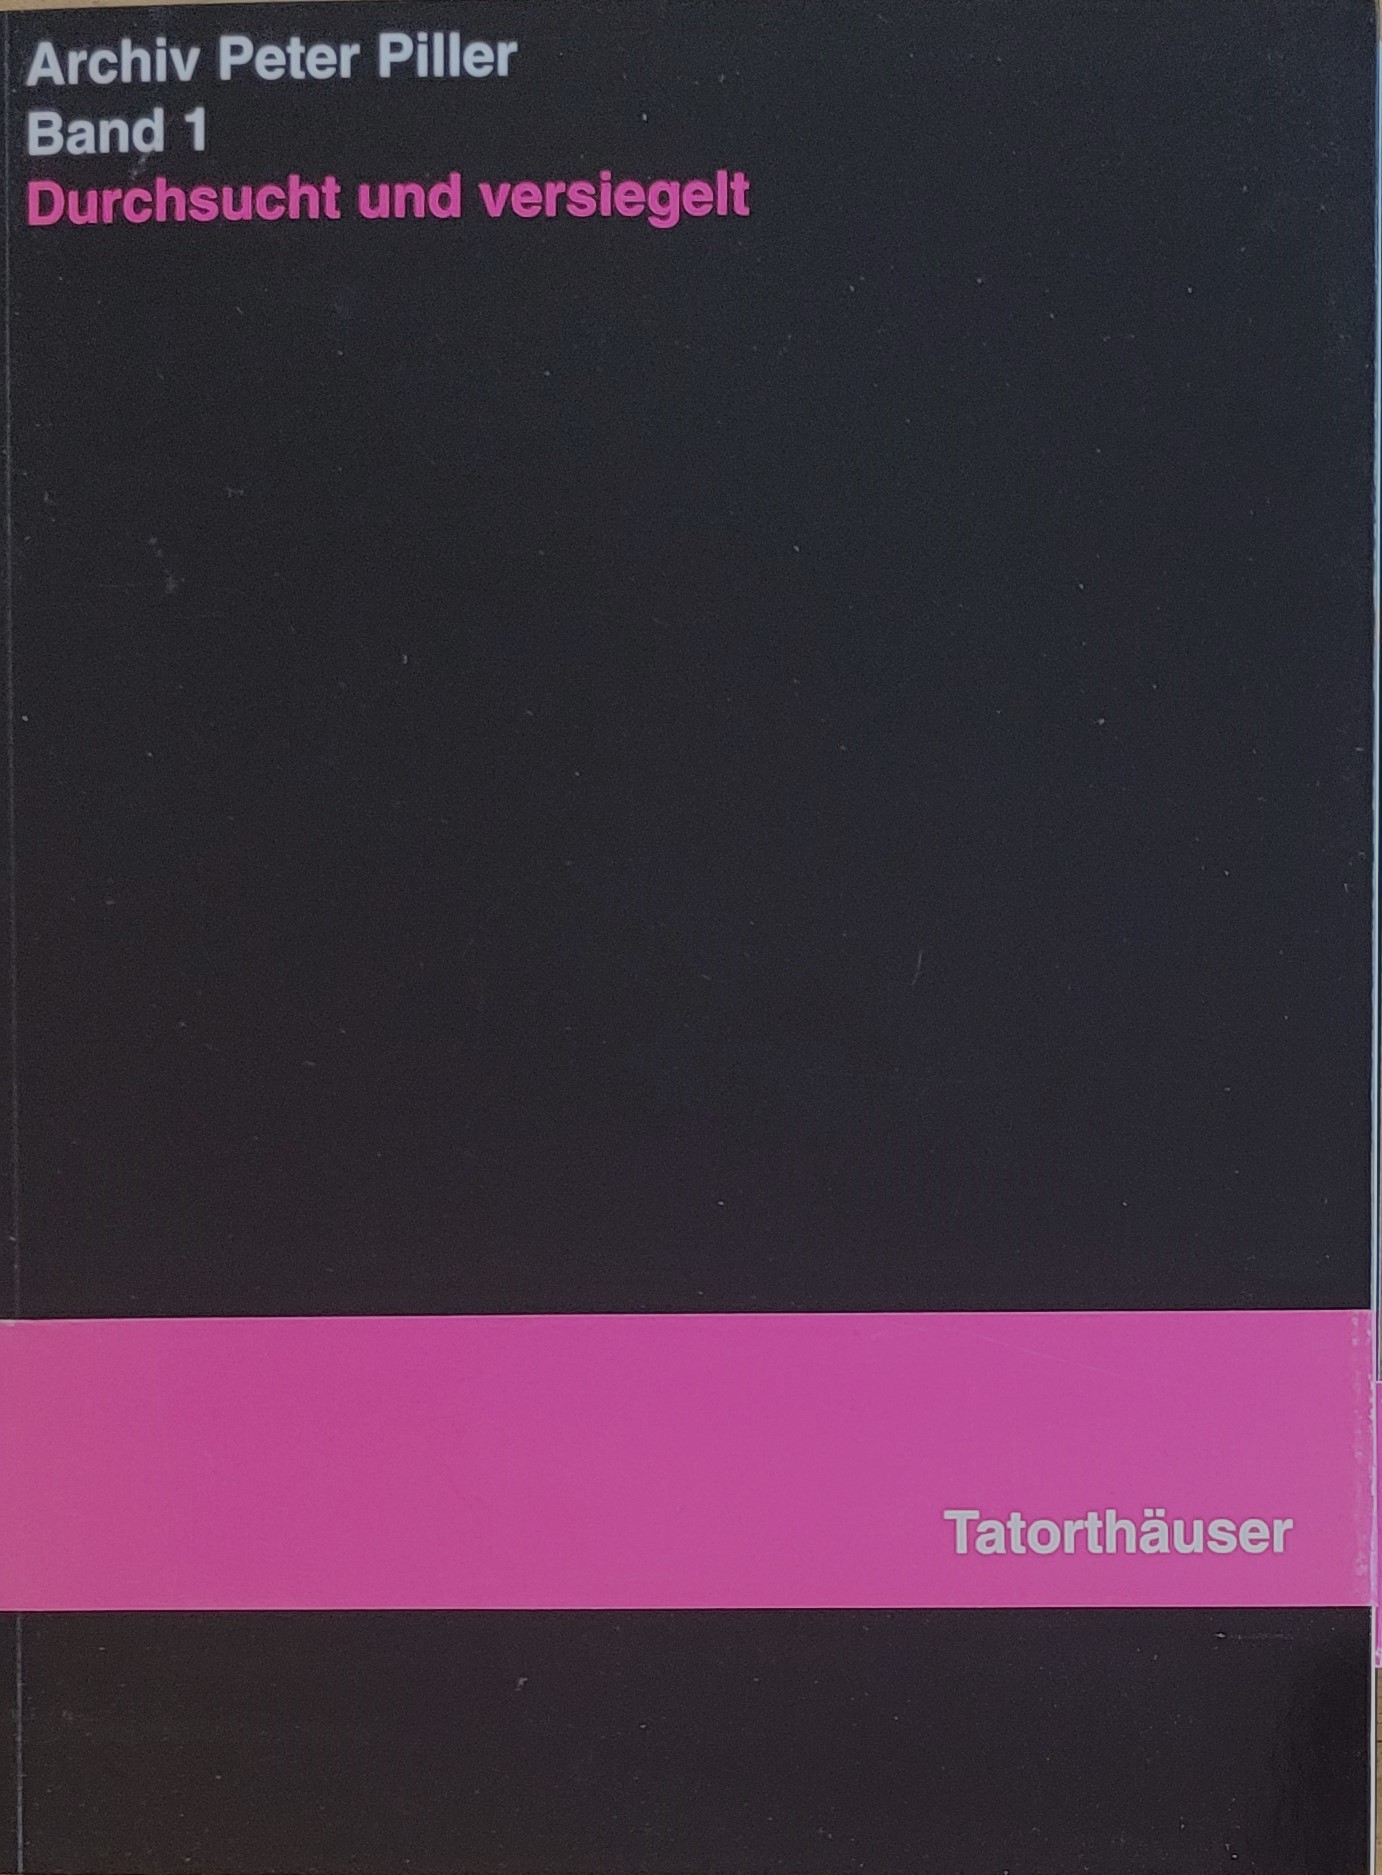 Archiv Peter Piller - Band 1 : Durchsucht und versiegelt - Tatorthäuser. - Keller, Christoph